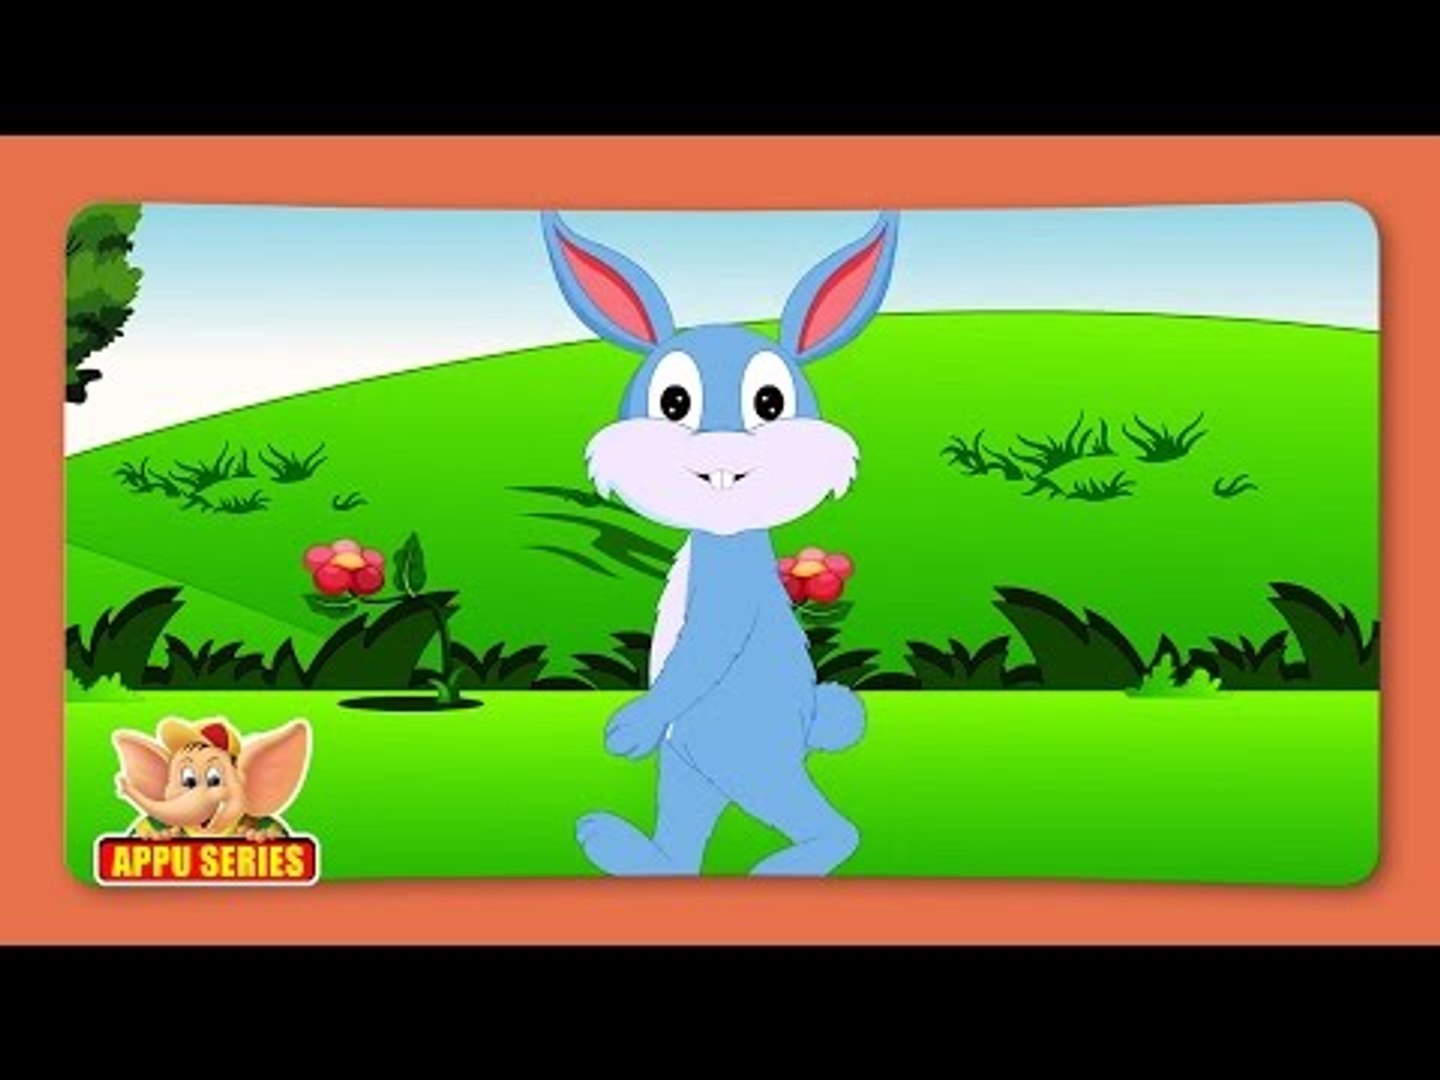 Sasa (Rabbit) - Animal Rhymes in Marathi - video Dailymotion